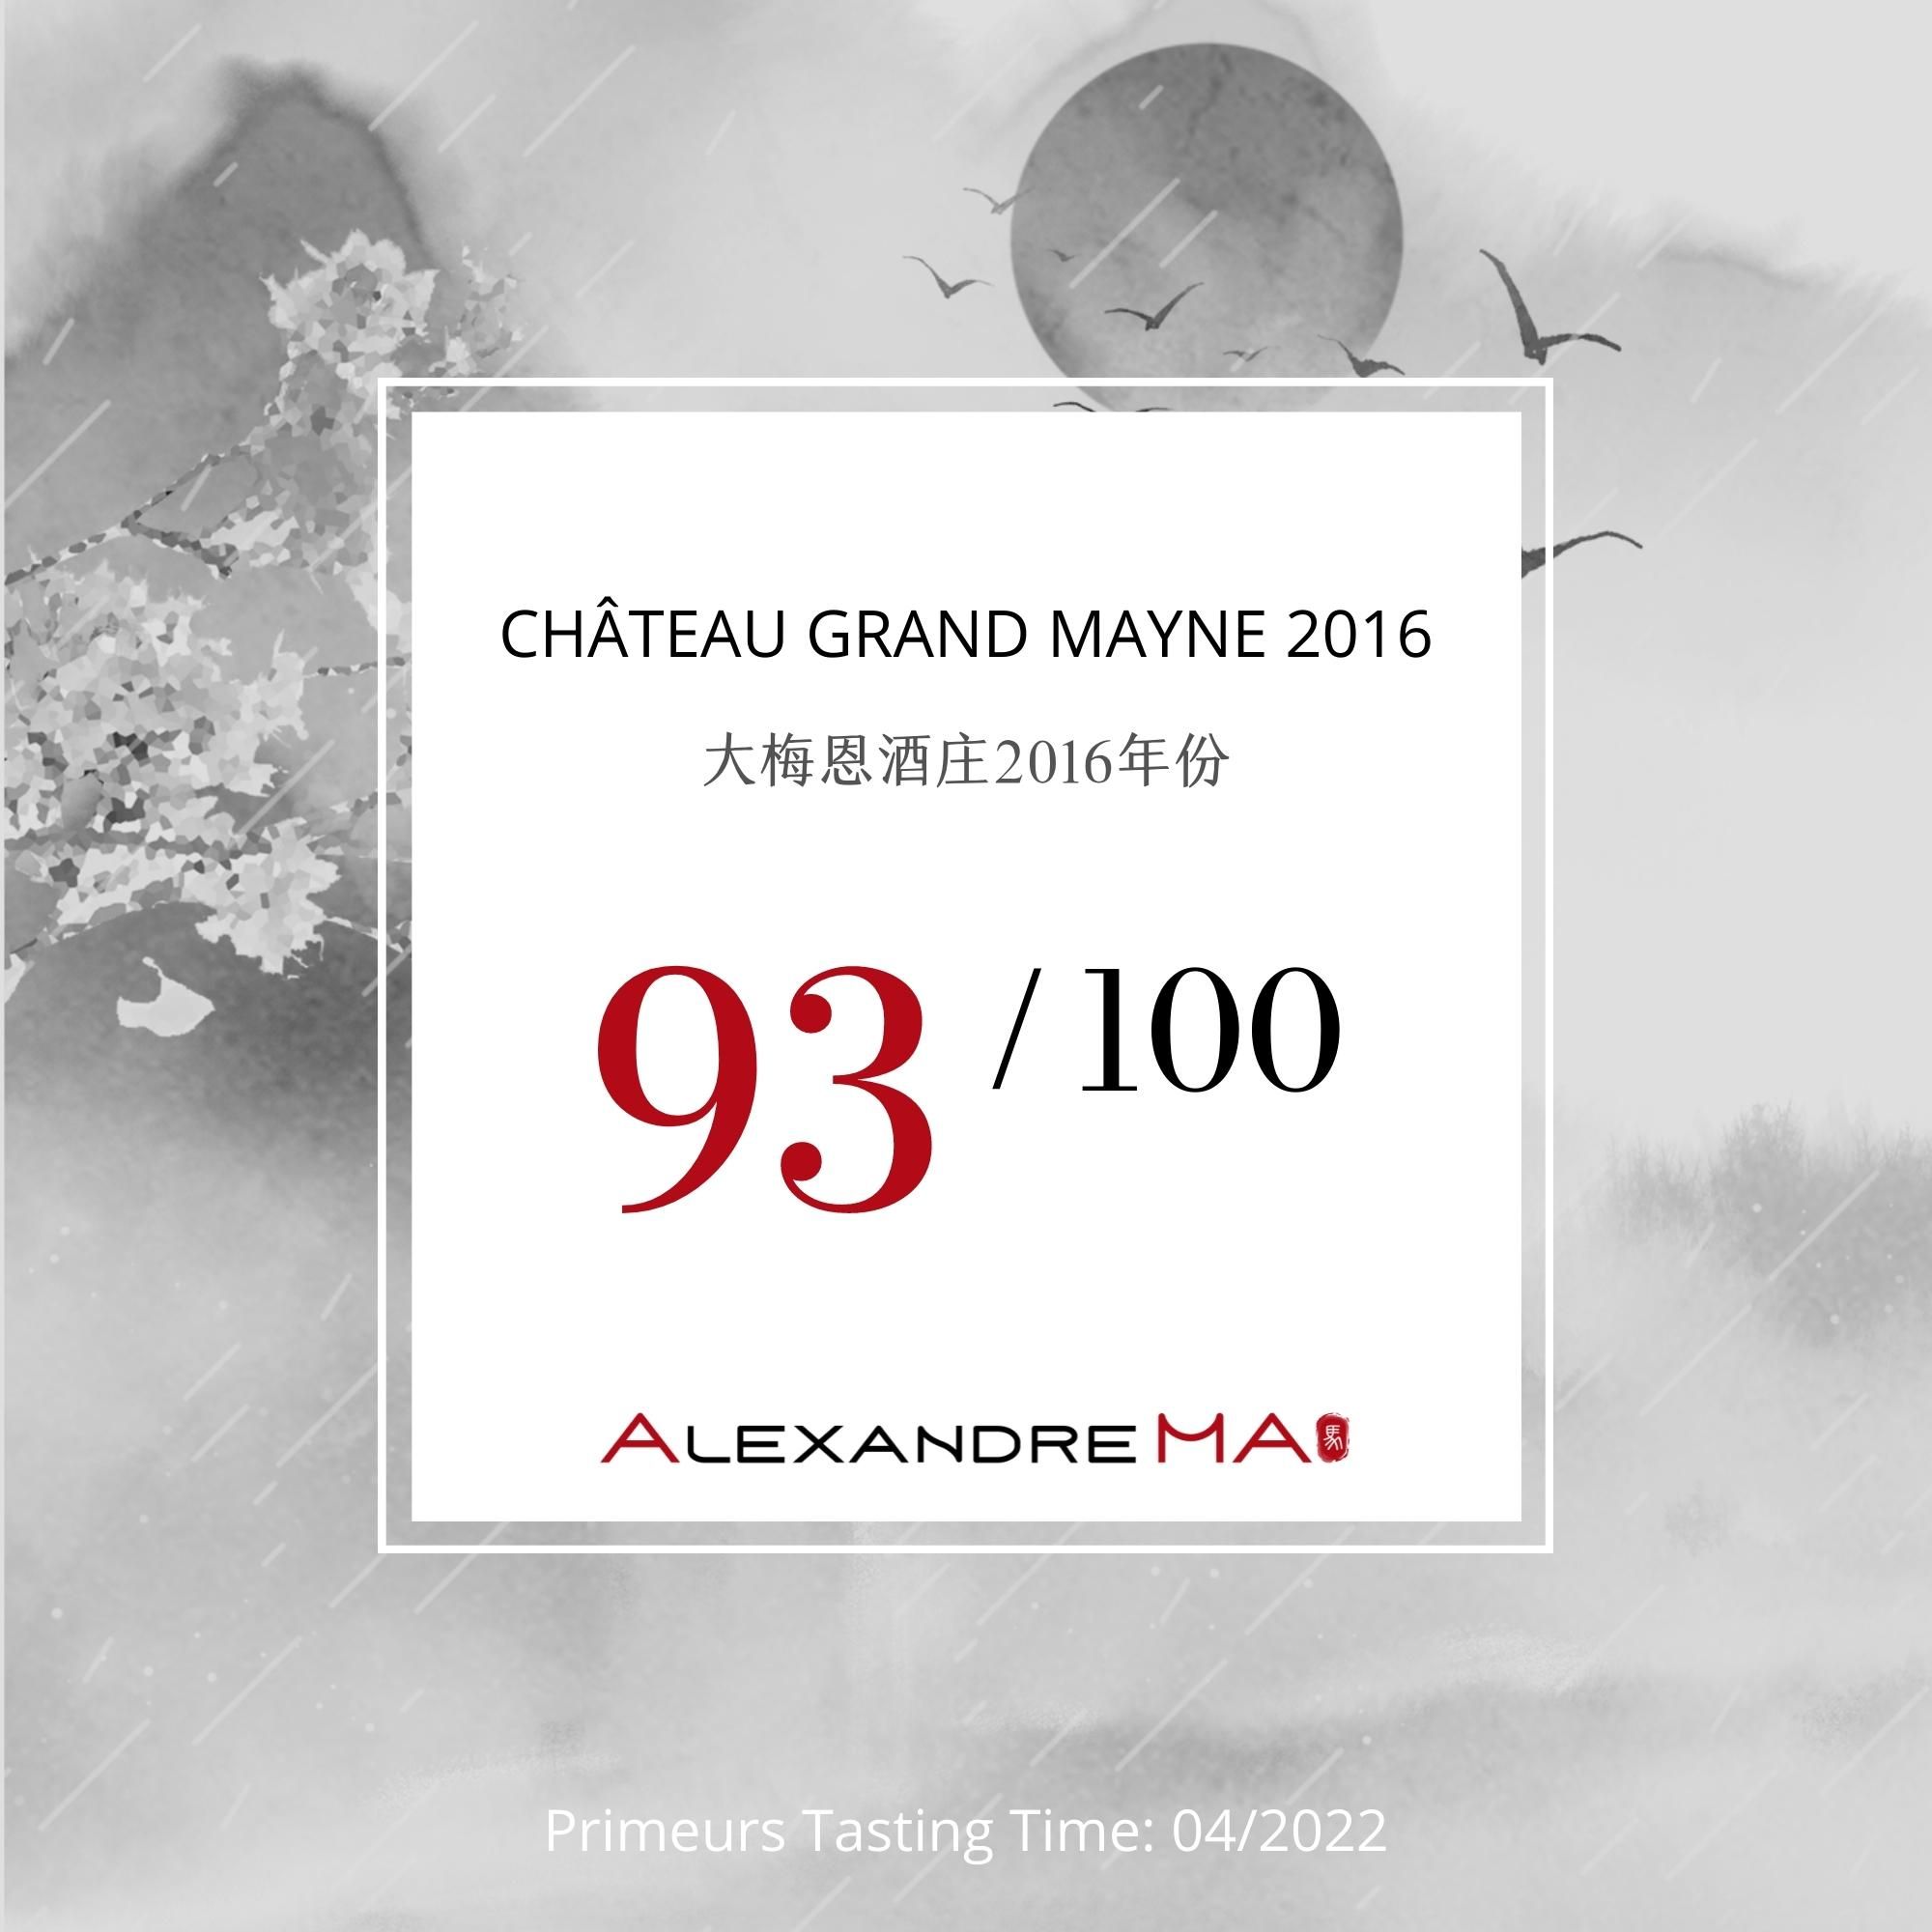 Château Grand Mayne 2016 - Alexandre MA